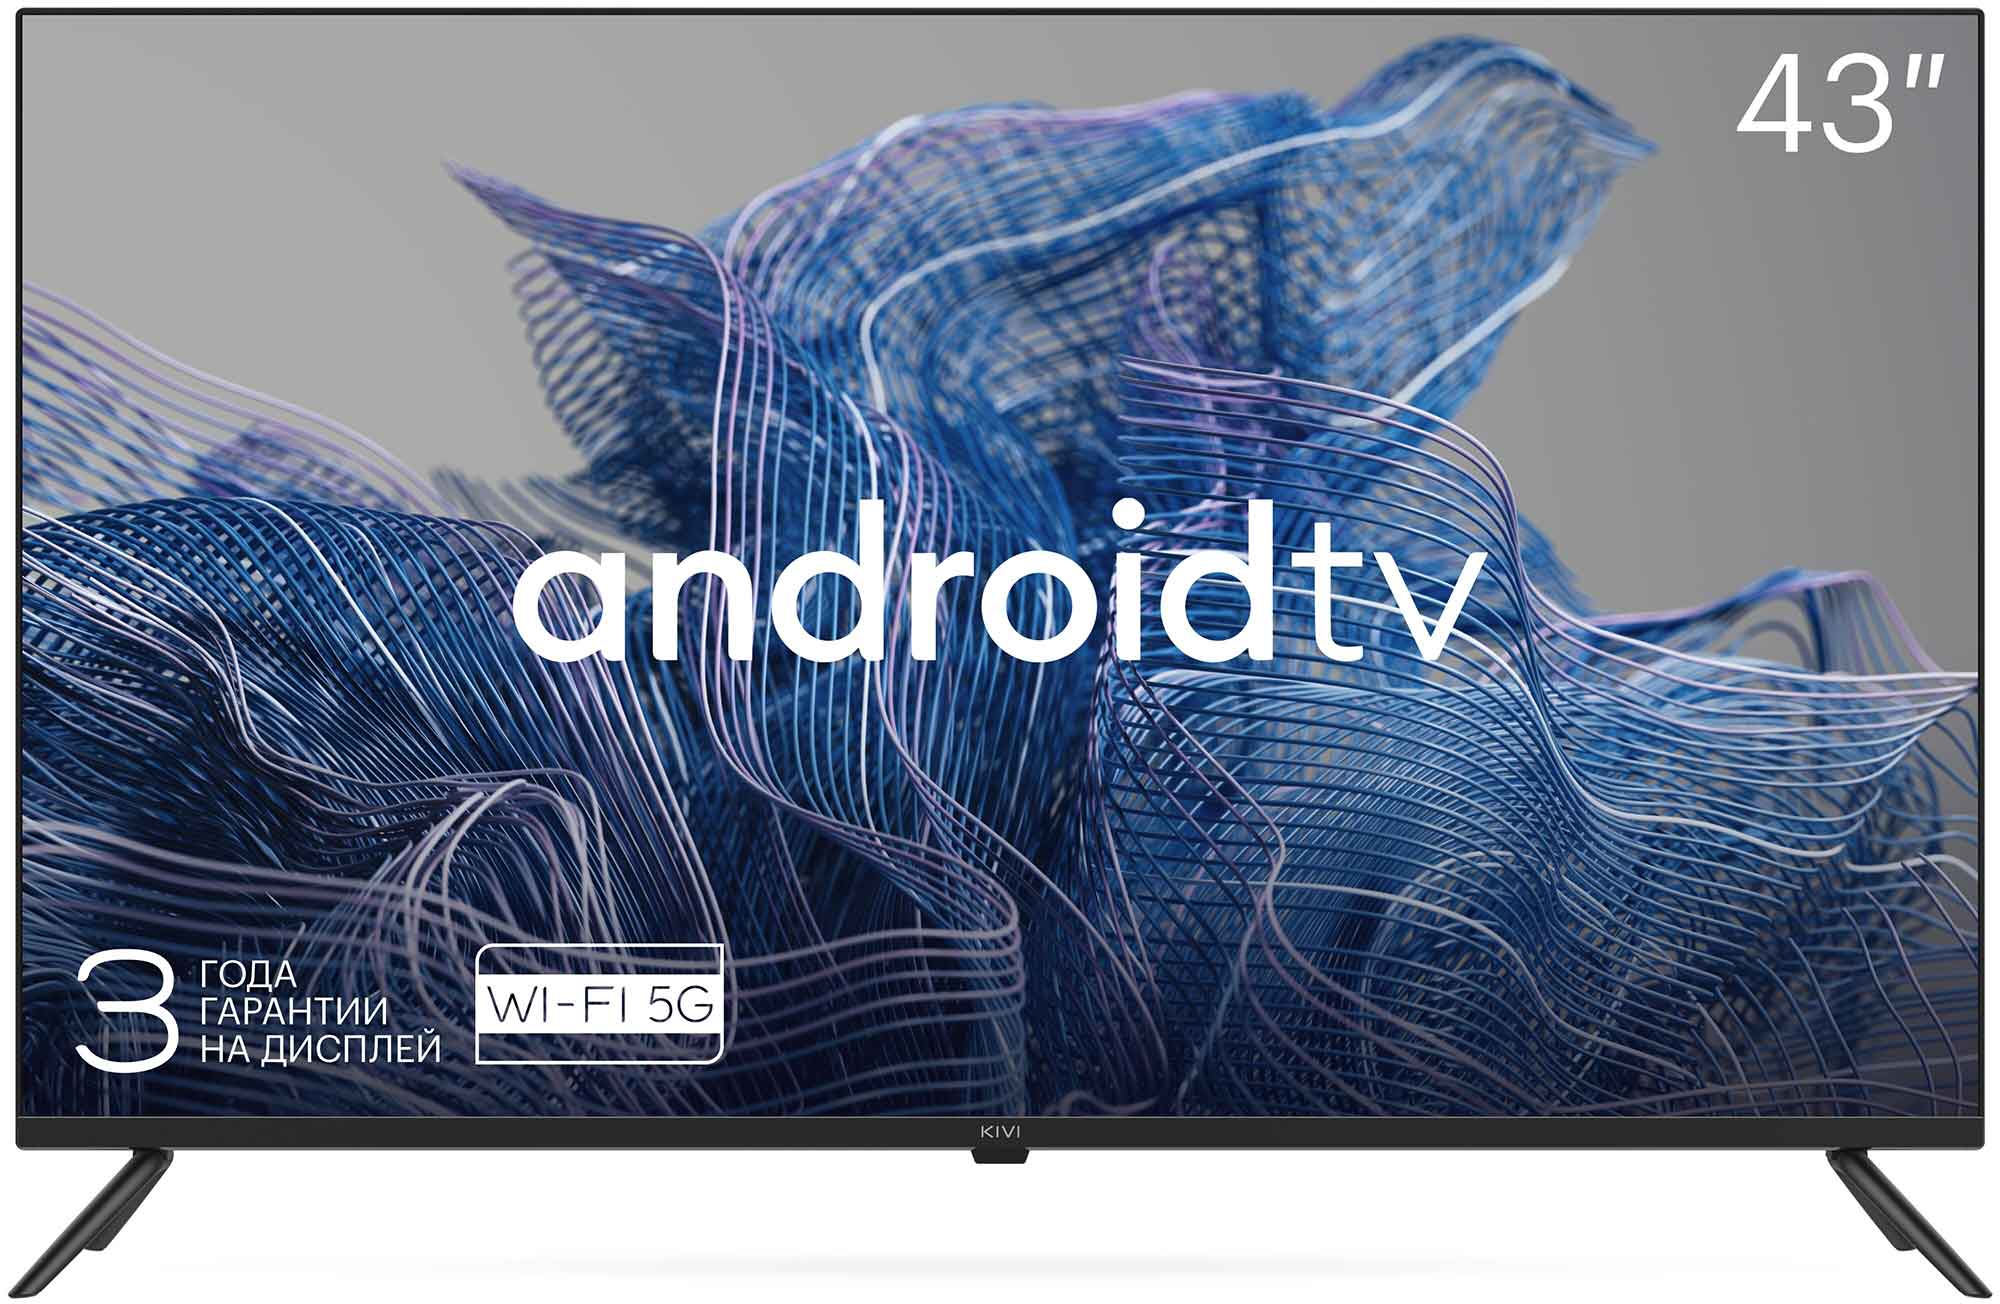 Телевизор Kivi LED 43 43U740NB черный телевизор kivi 32h740lb hd android smart tv динамики с поддержкой dolby audio и калибровкой от jvc